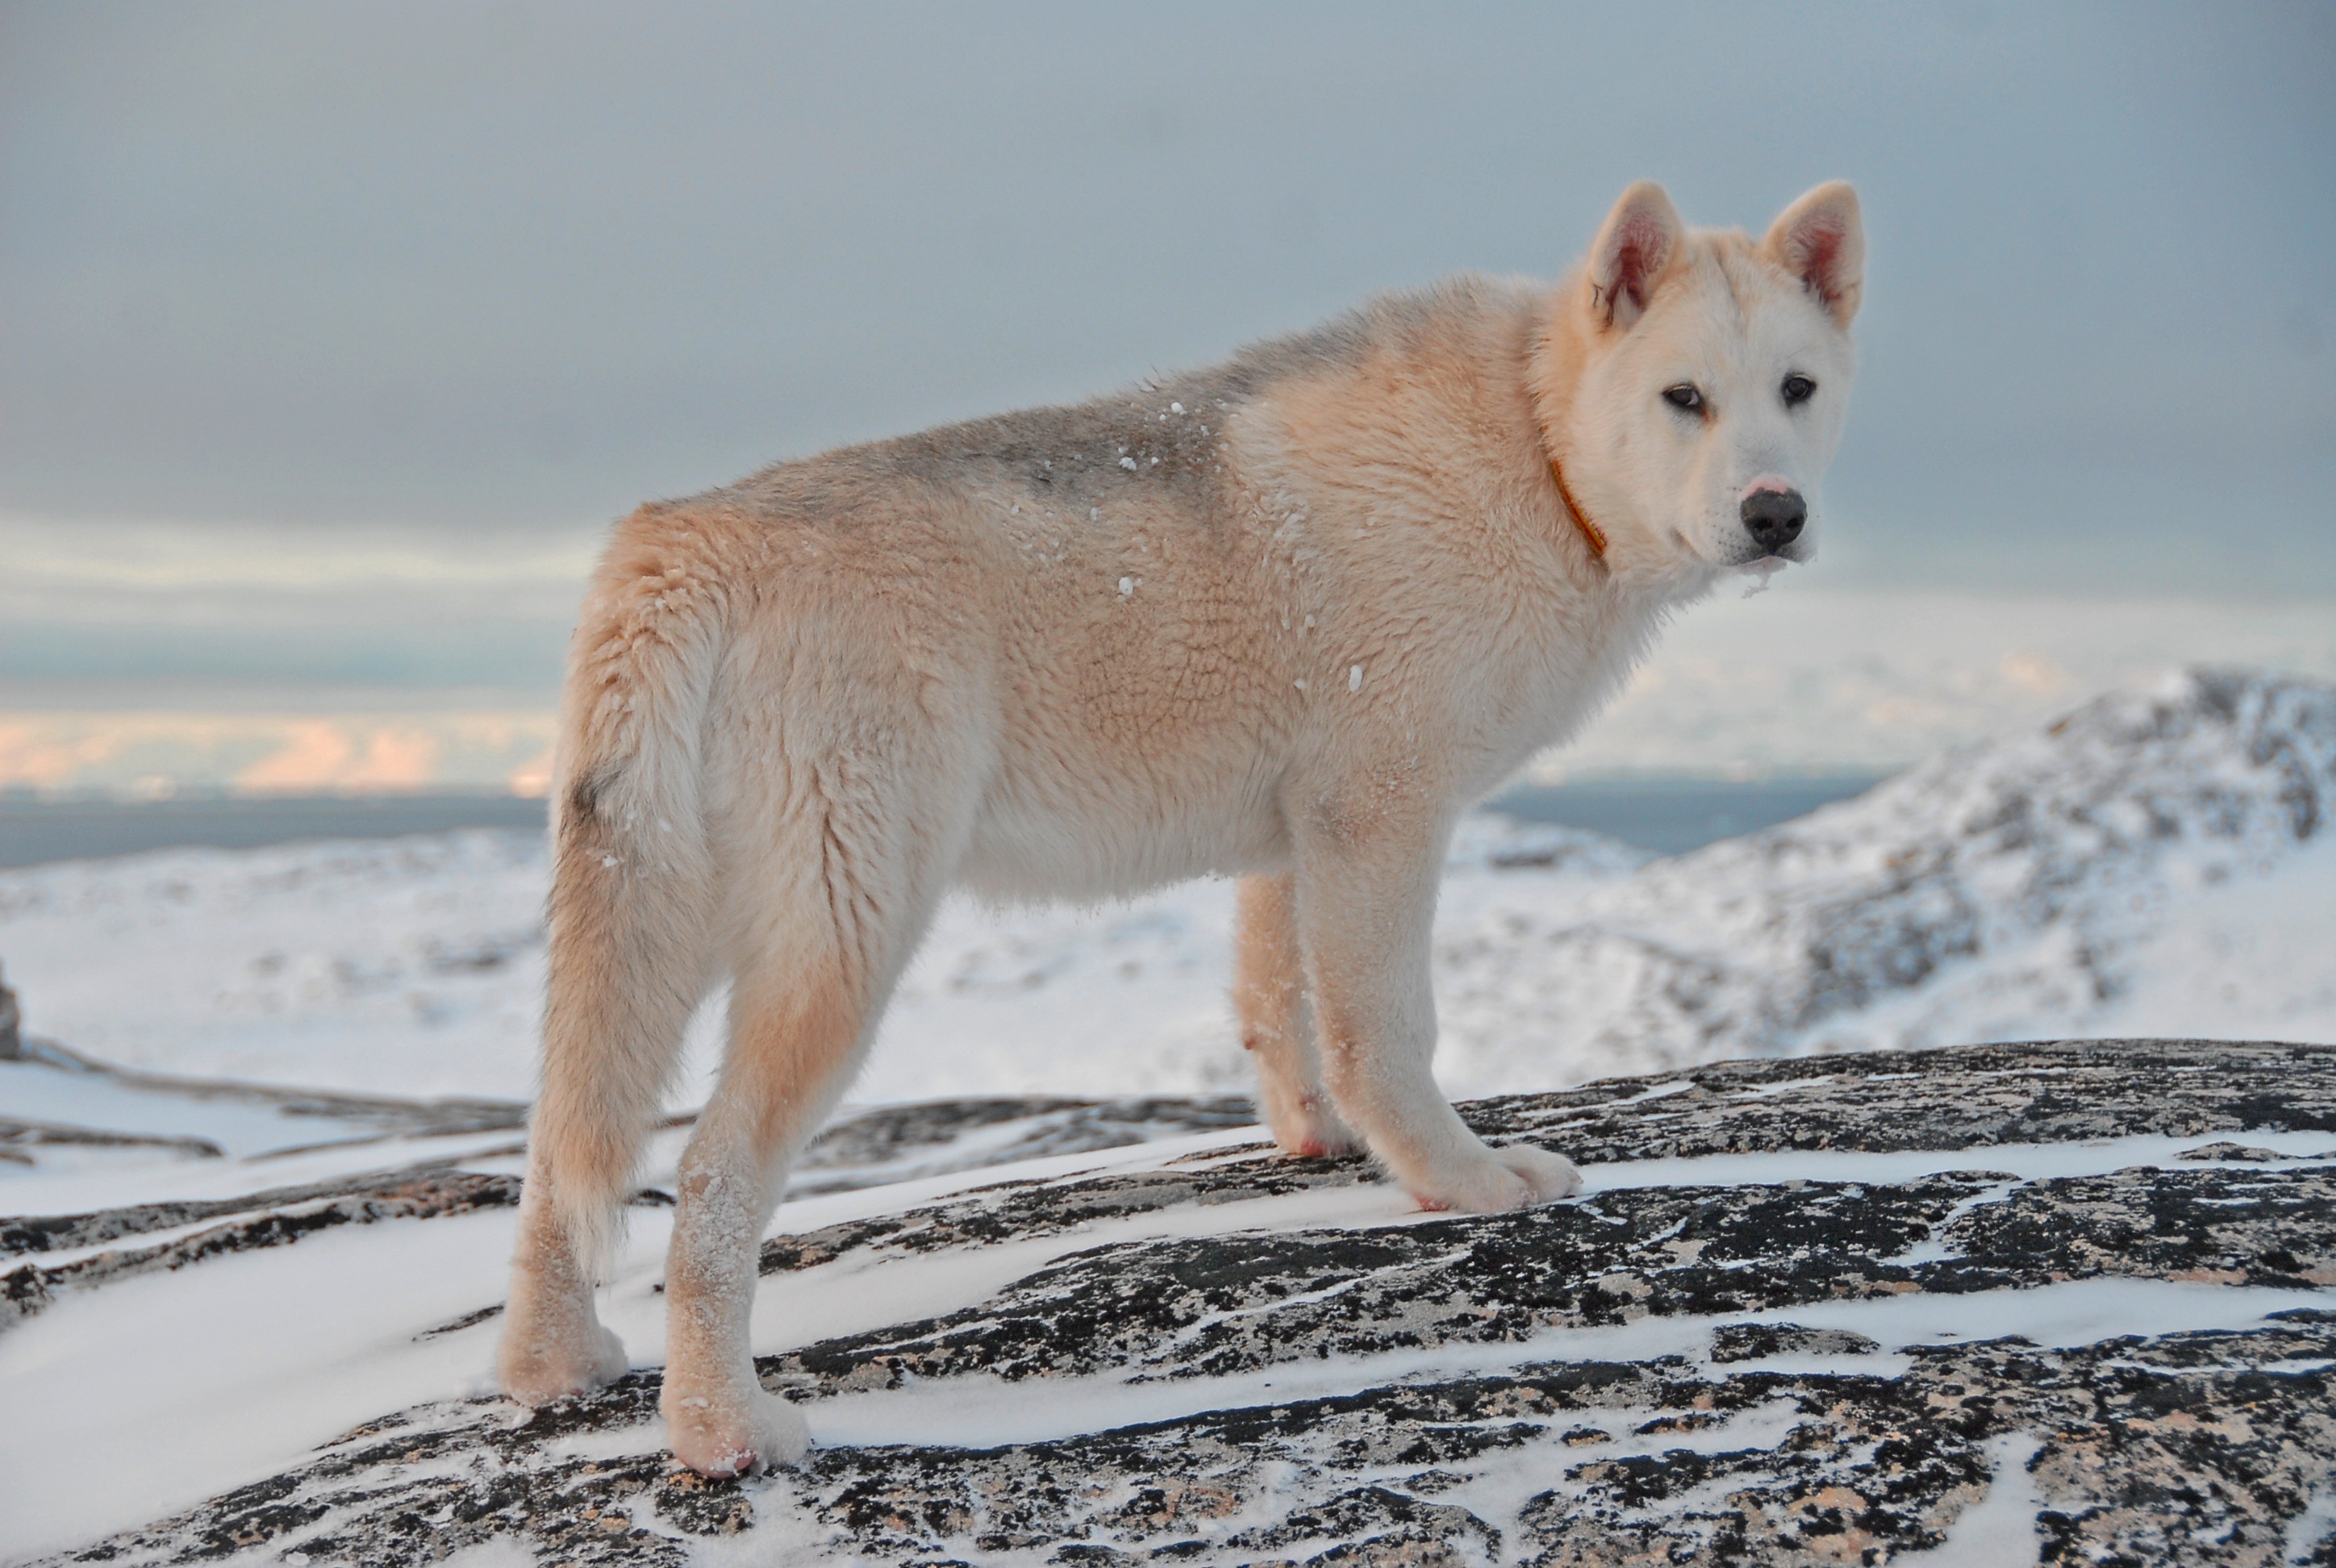 Скачать обои Гренландская Собака на телефон бесплатно